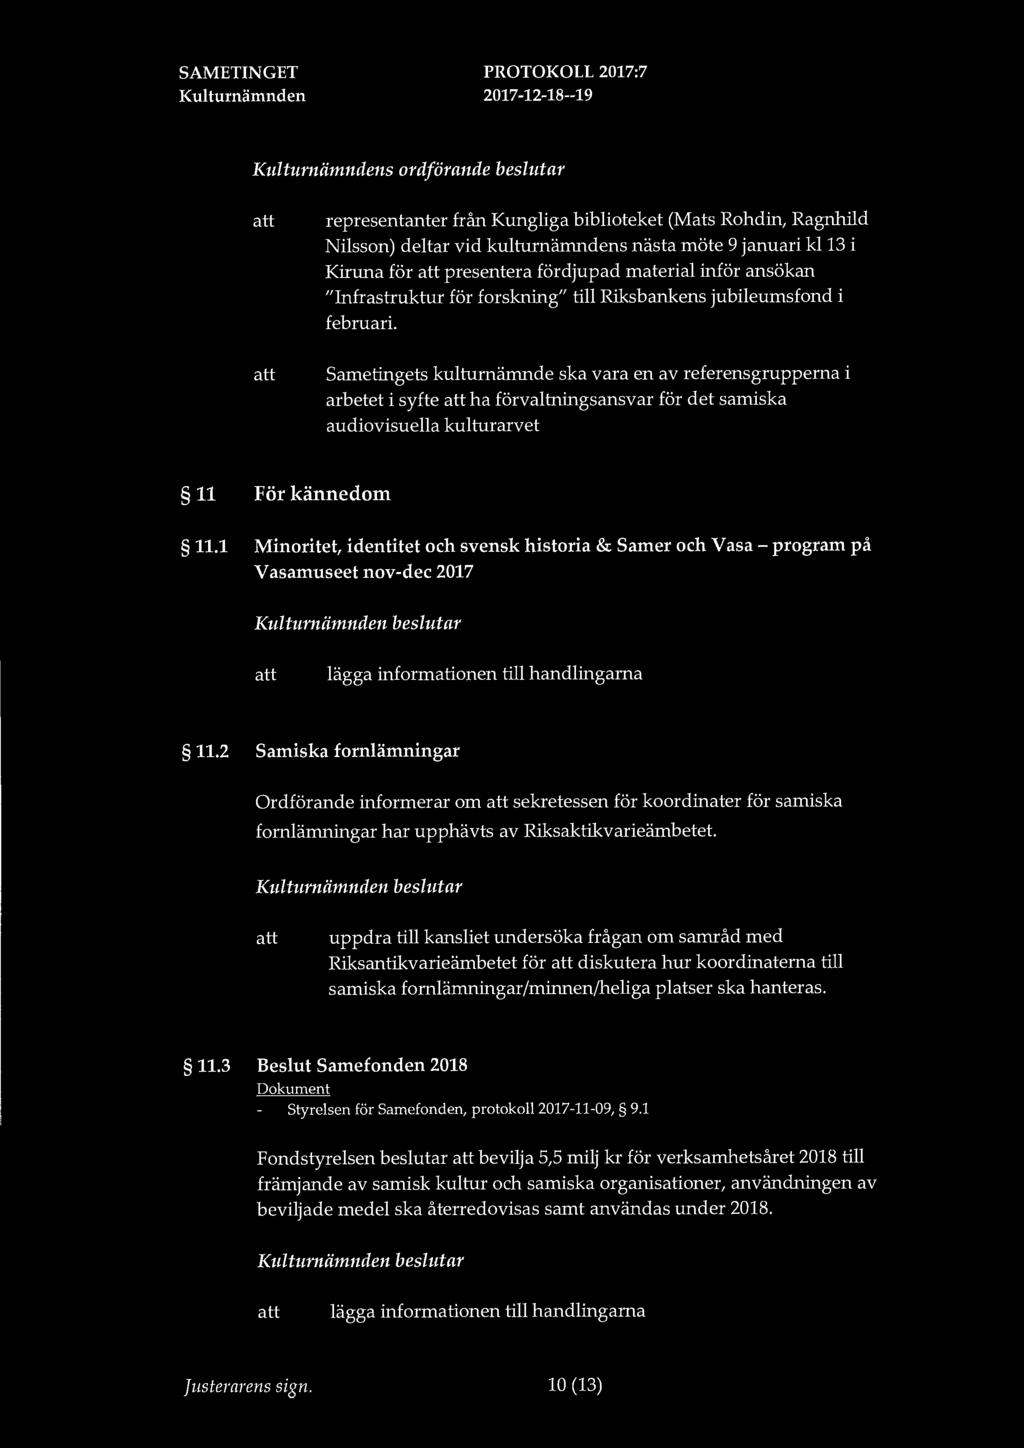 s ordförande beslutar representanter från Kungliga biblioteket (Mats Rohdin, Ragnhild Nilsson) deltar vid kulturnämndens nästa möte 9 januari kl13 i Kiruna för presentera fördjupad material inför